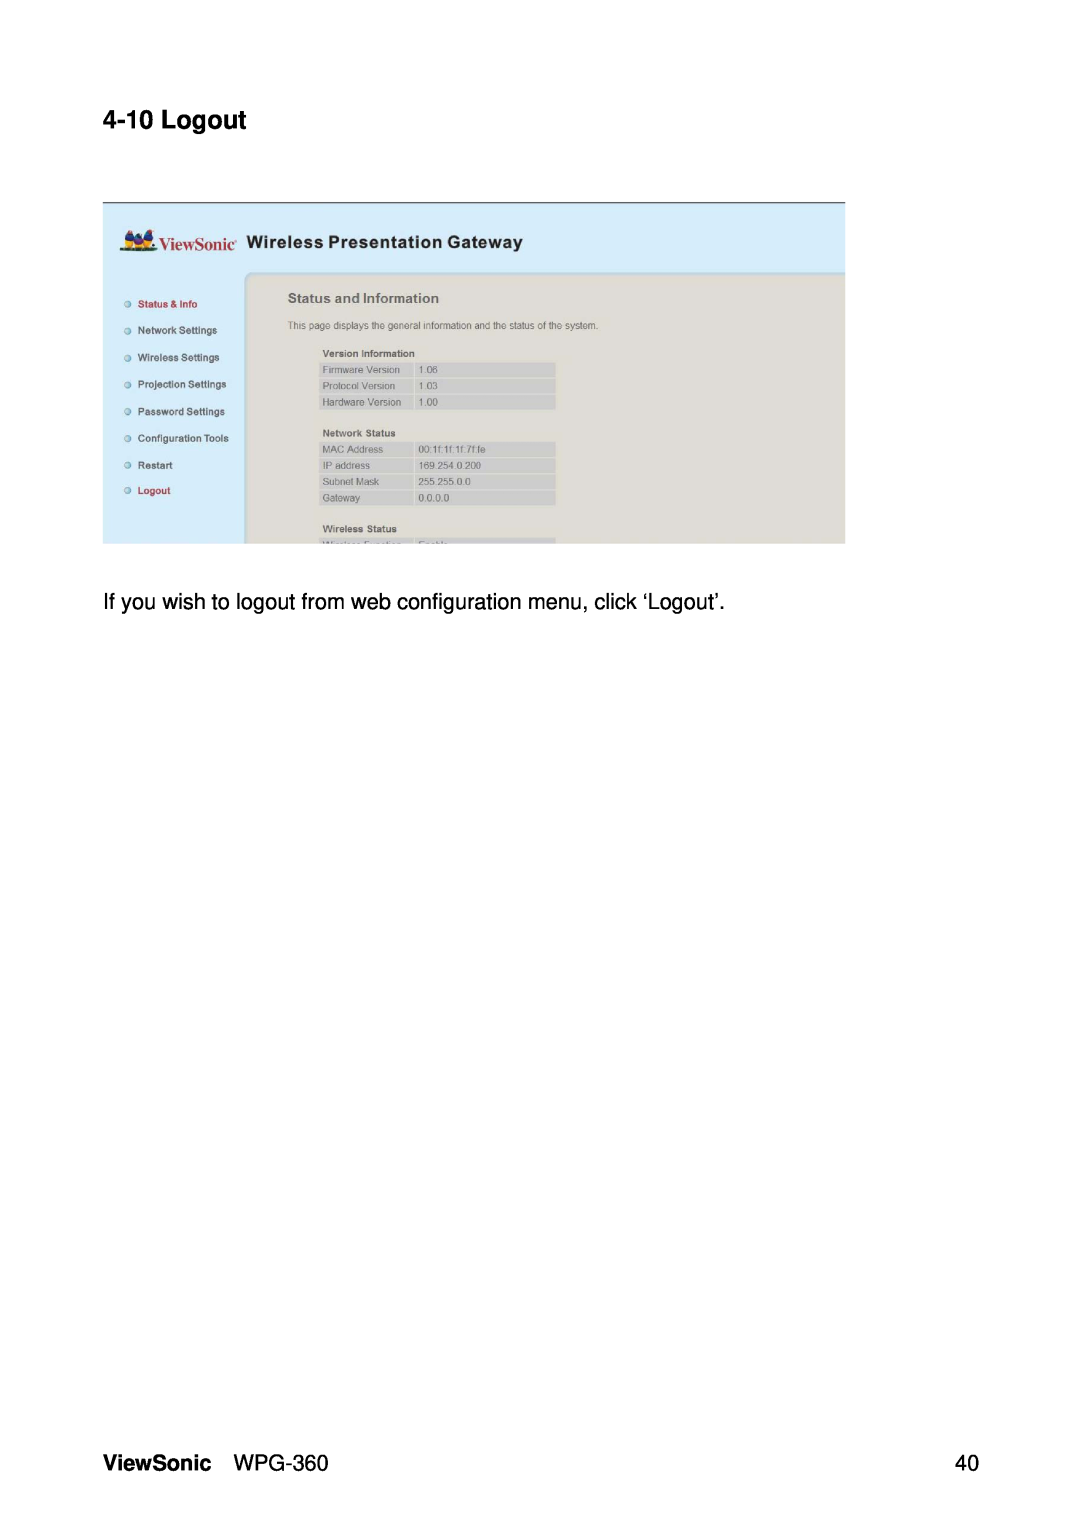 ViewSonic manual If you wish to logout from web configuration menu, click ‘Logout’, ViewSonic WPG-360 